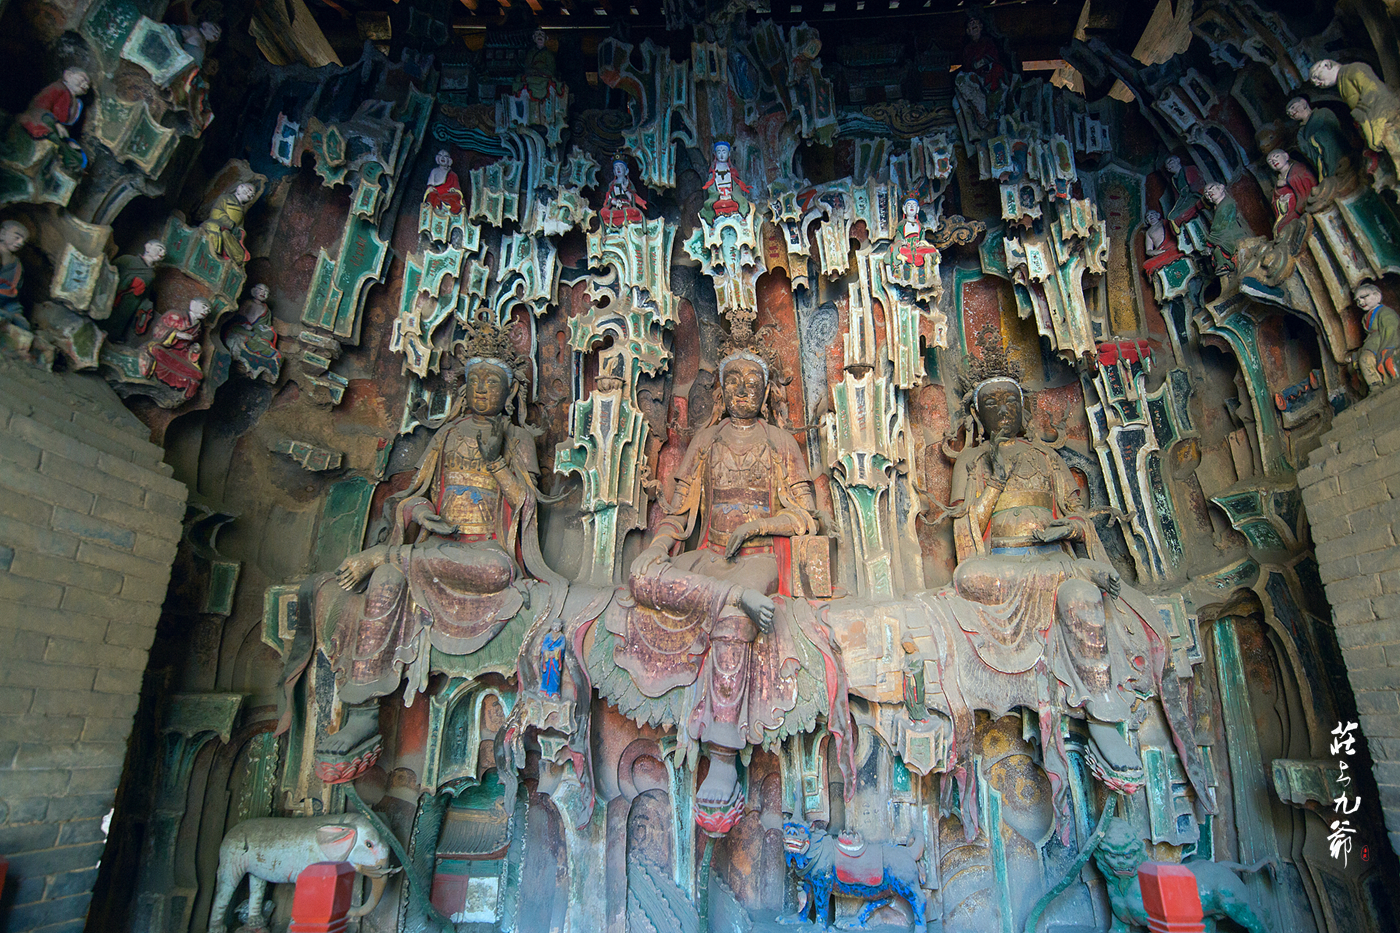 一座乡野小庙的壁画居然堪比甘肃敦煌和山西永乐宫